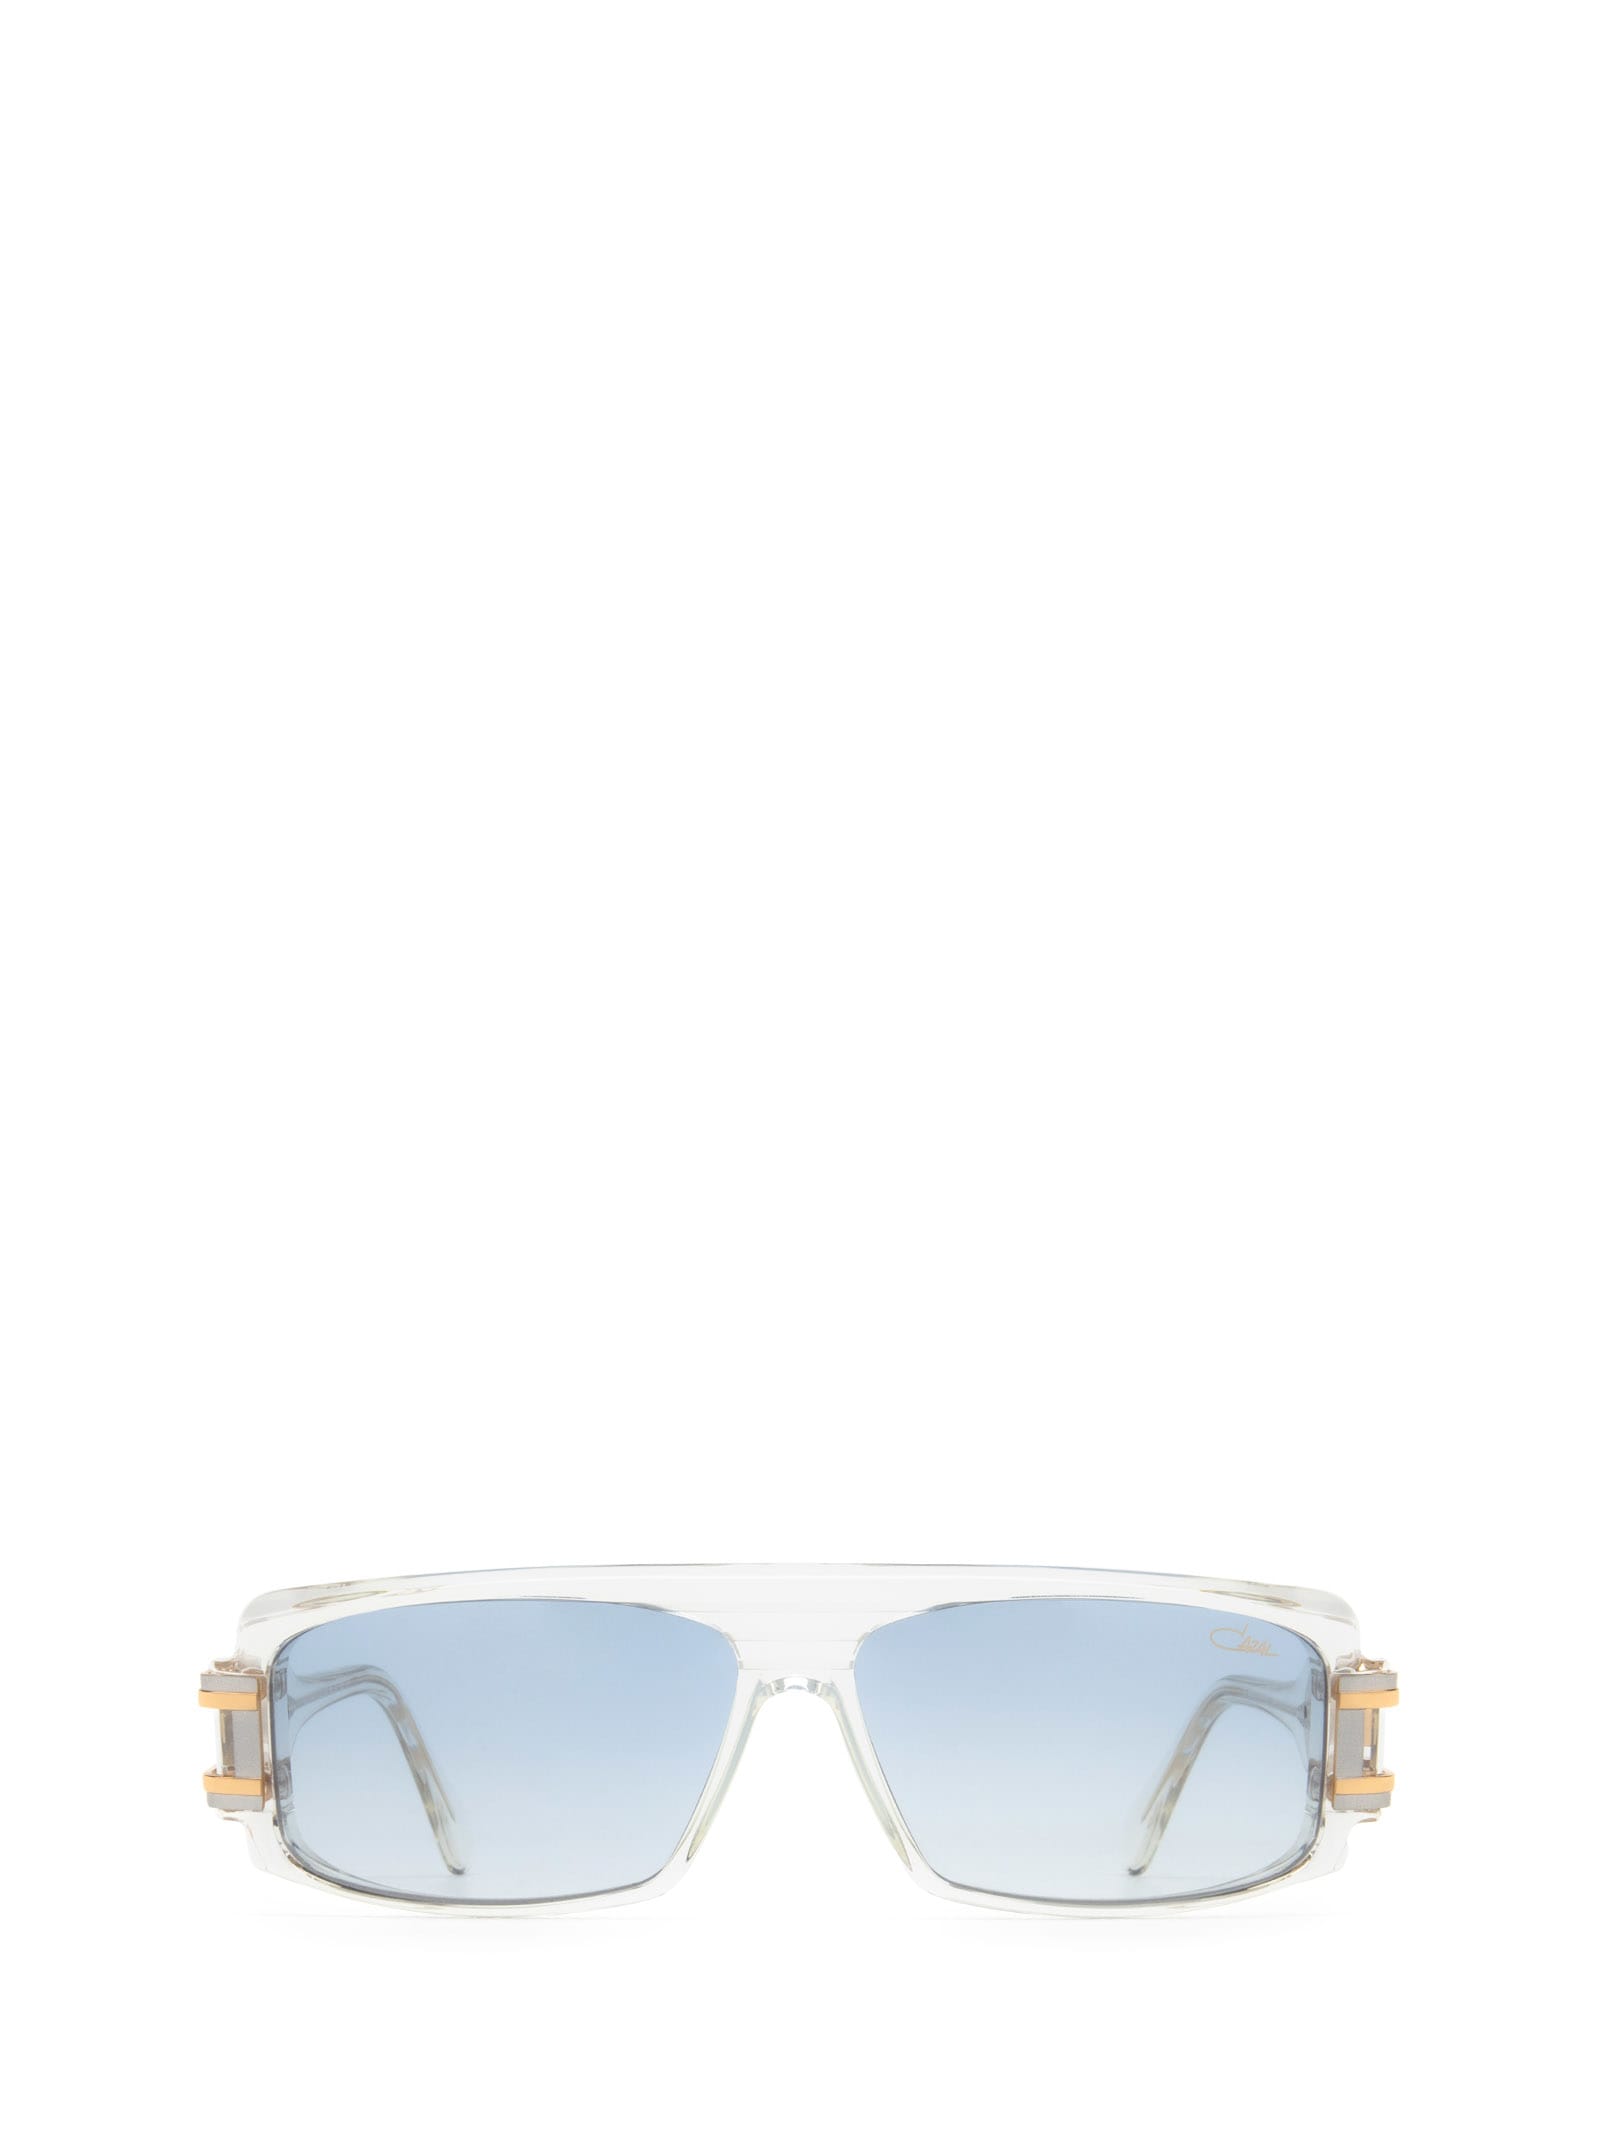 Cazal 164/3 Crystal - Bicolour Sunglasses